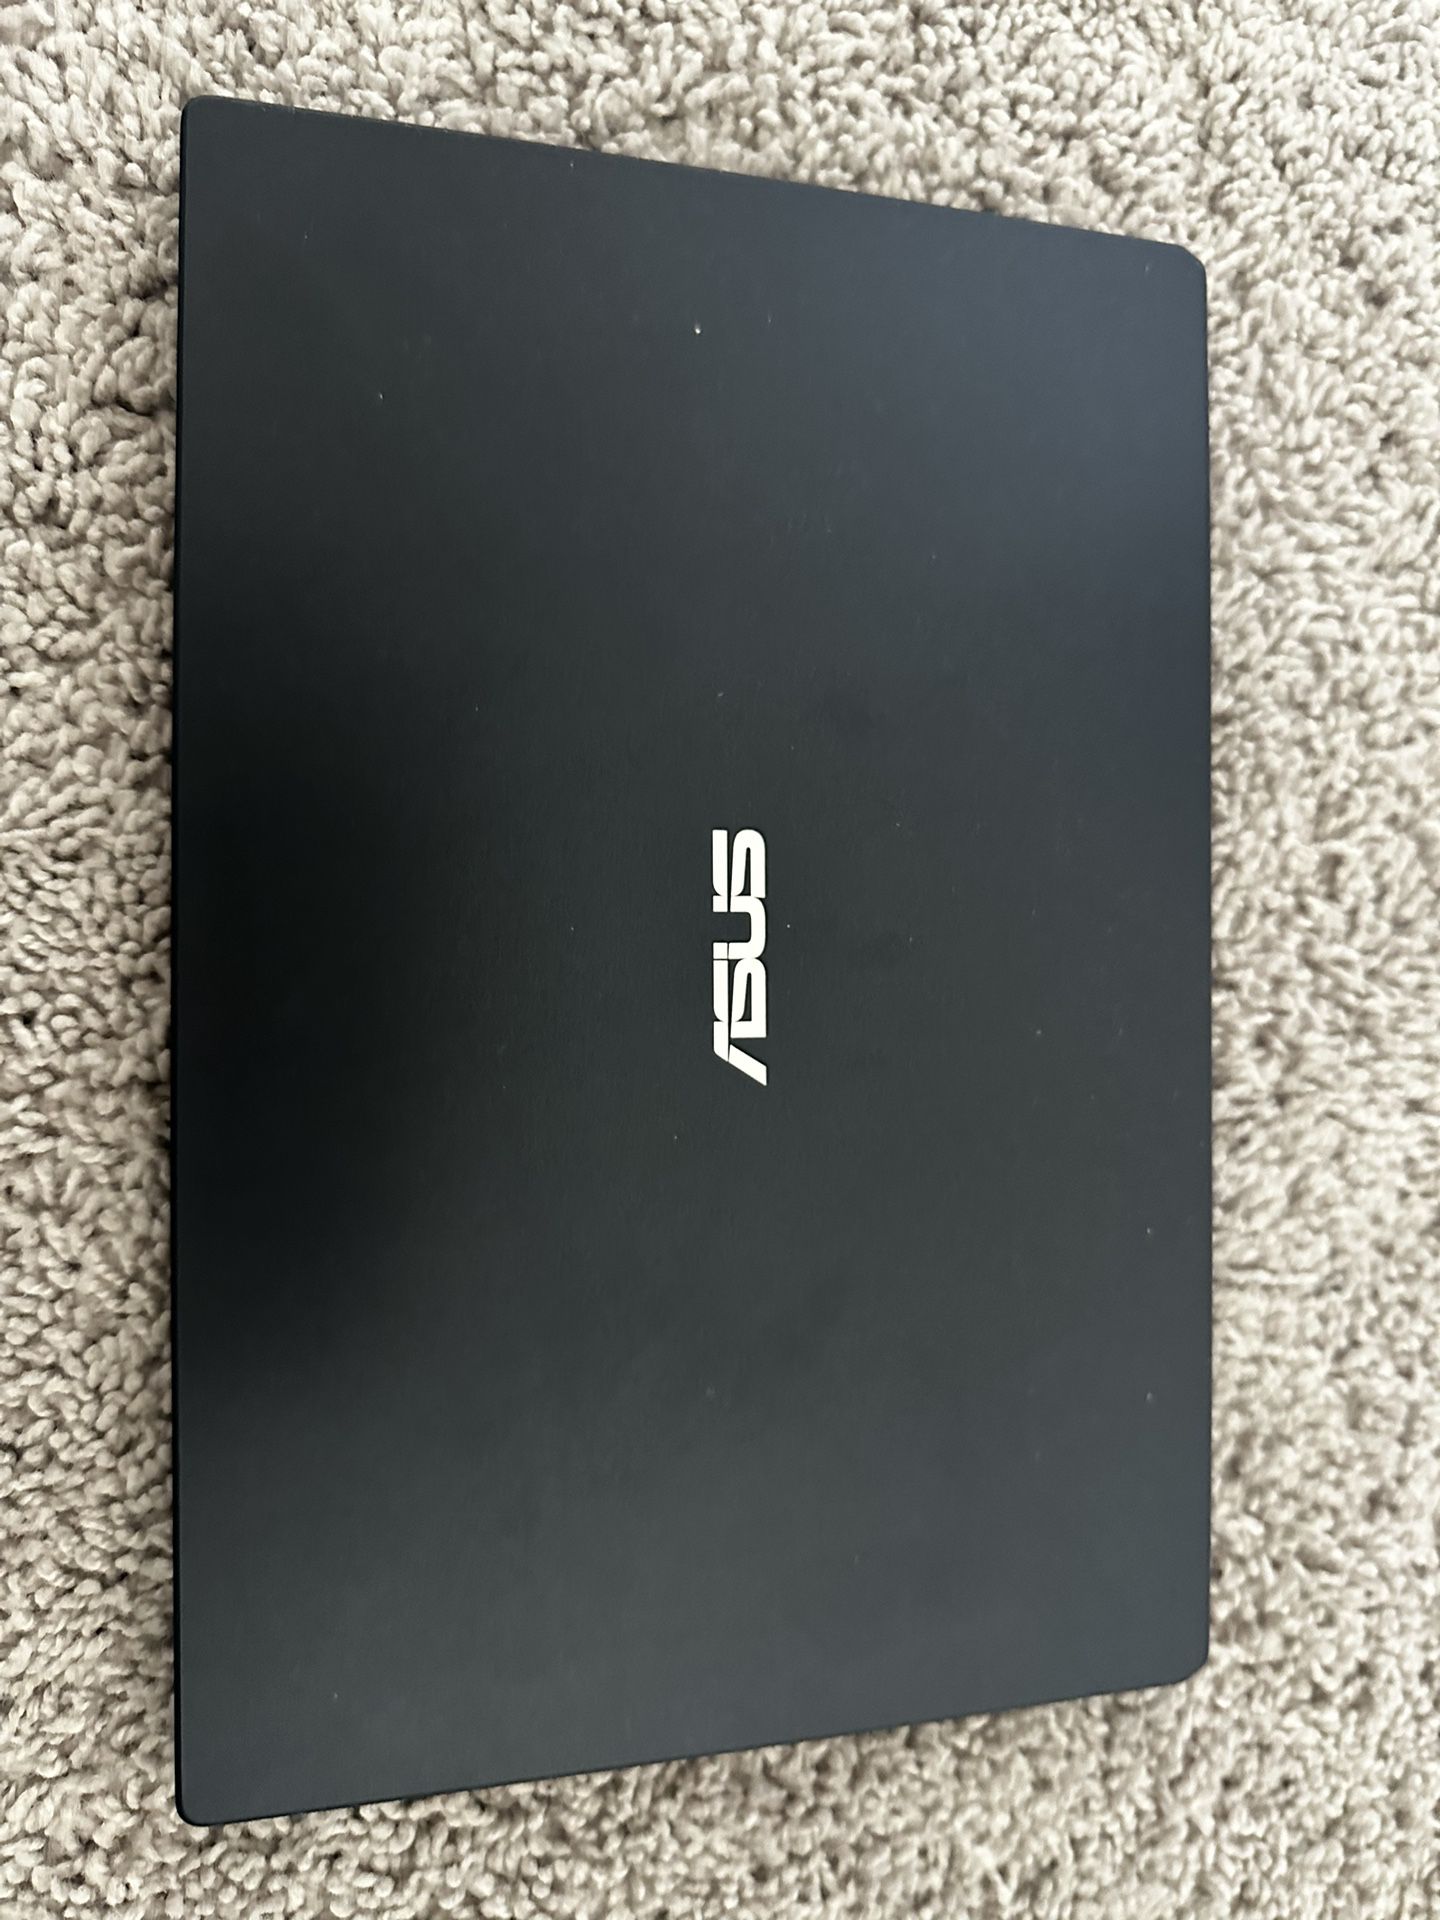 Asus E210MA Notebook